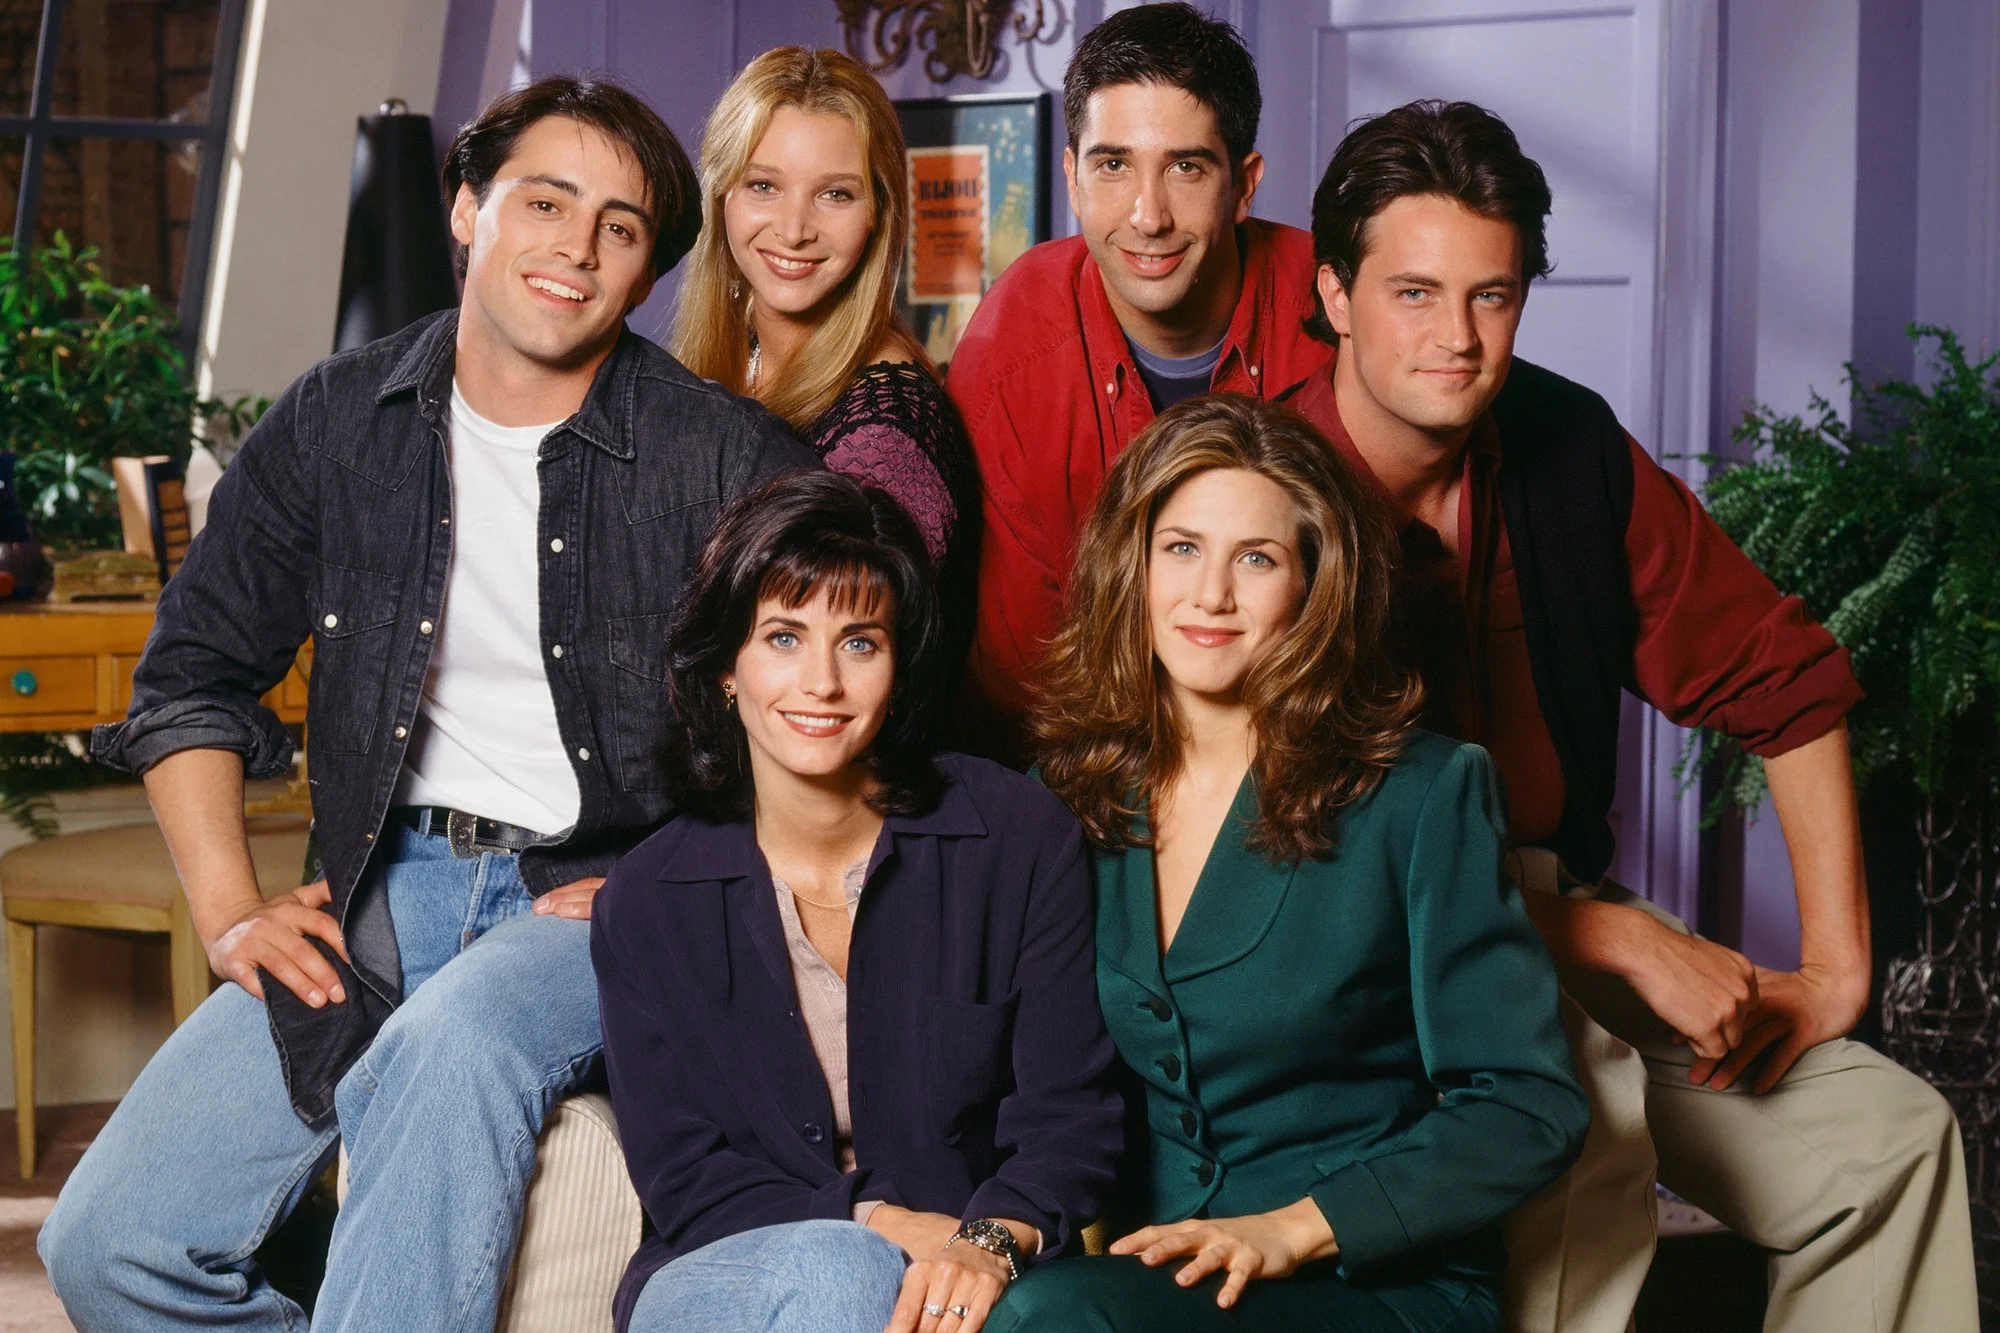 27 мая выходит долгожданный специальный эпизод «Друзей» (Friends: The Reunion), в котором герои знаменитого ситкома вновь соберутся вместе в своей нью-йоркской квартире. Ситком выходил с 1994 по 2004 год. За прошедшие 17 лет подробности финала можно было забыть. Напоминаем, что произошло с друзьями, когда мы видели их на экране в последний раз.